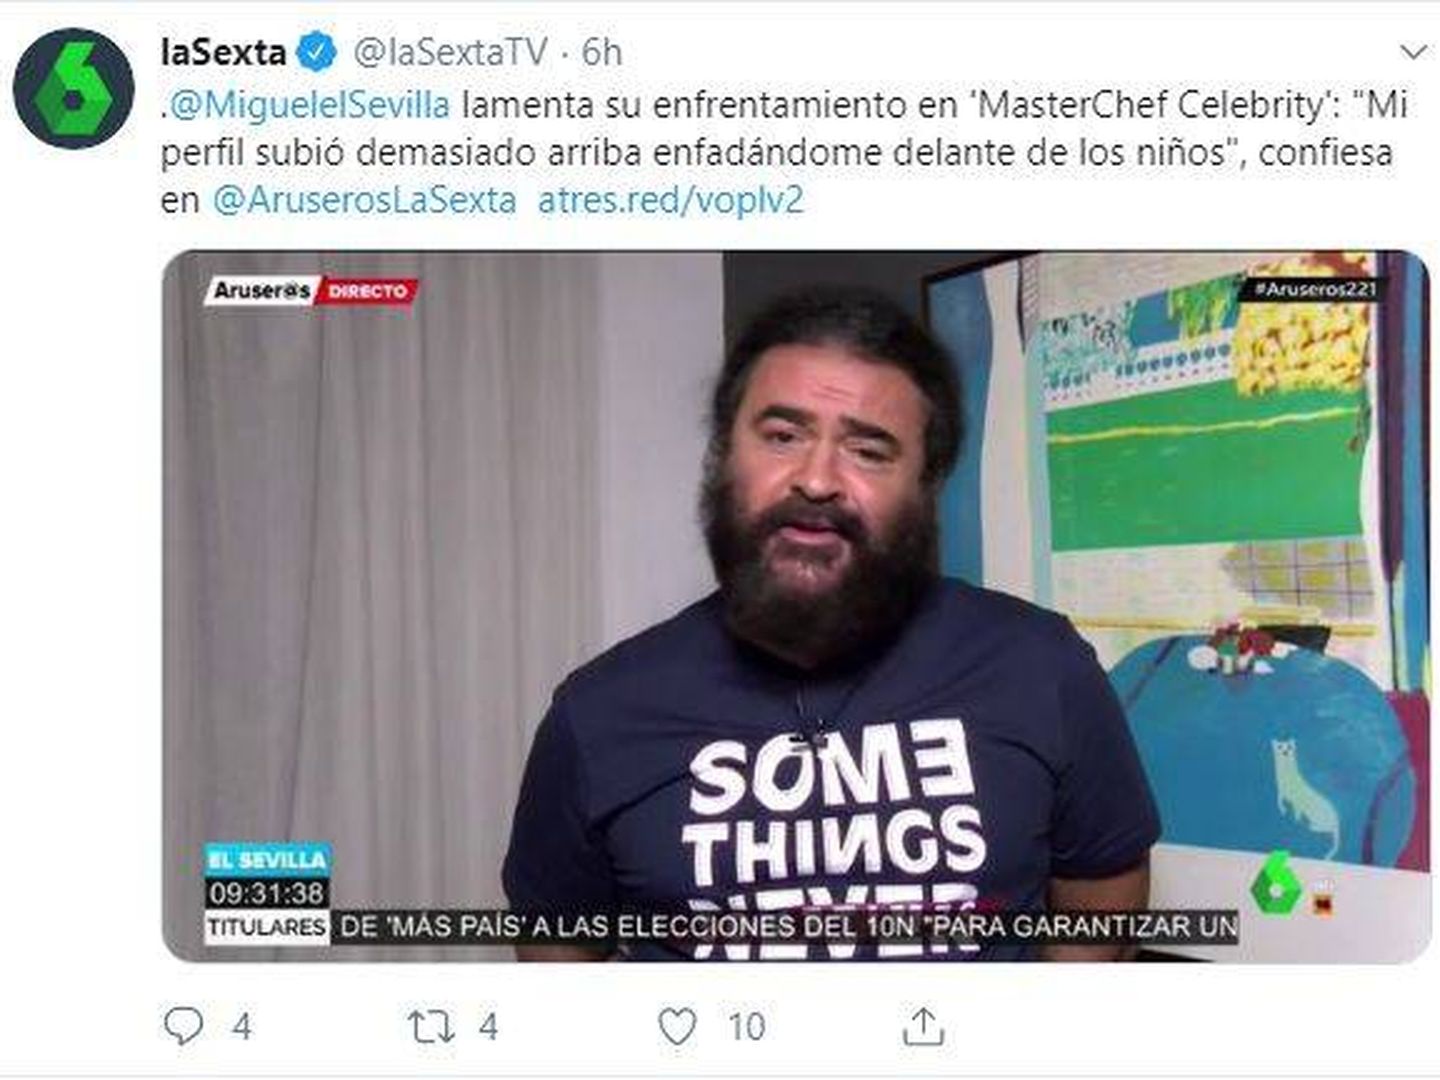 El Sevilla reflexiona y se arrepiente por su actitud en el programa Aruseros. (@lasextaTV)